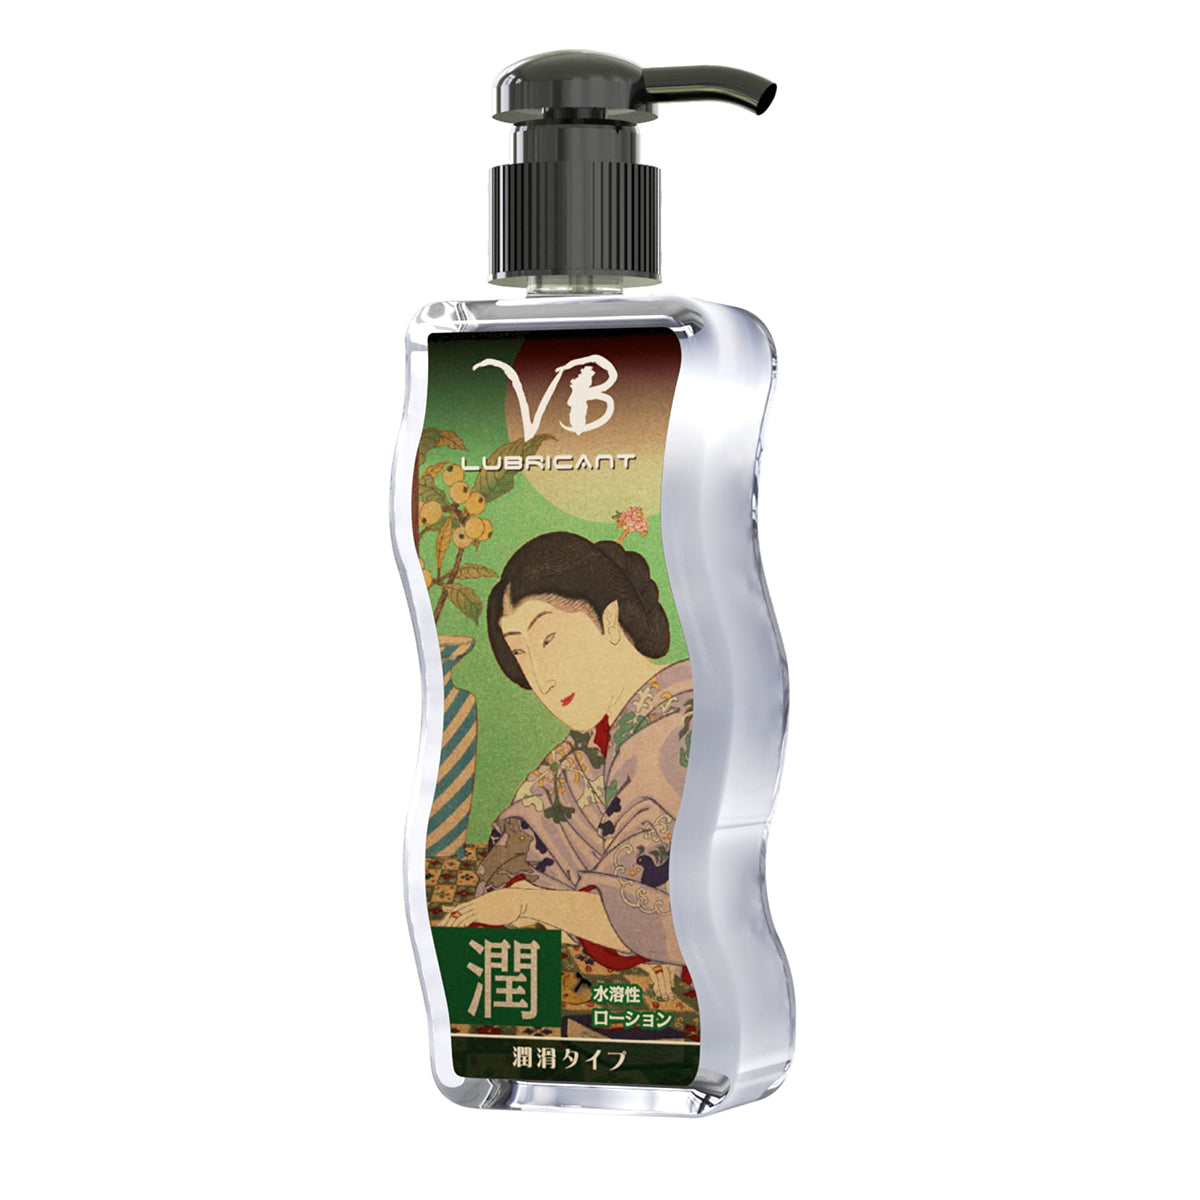 VB【潤】極潤感 透明質酸水性潤滑液 170ml